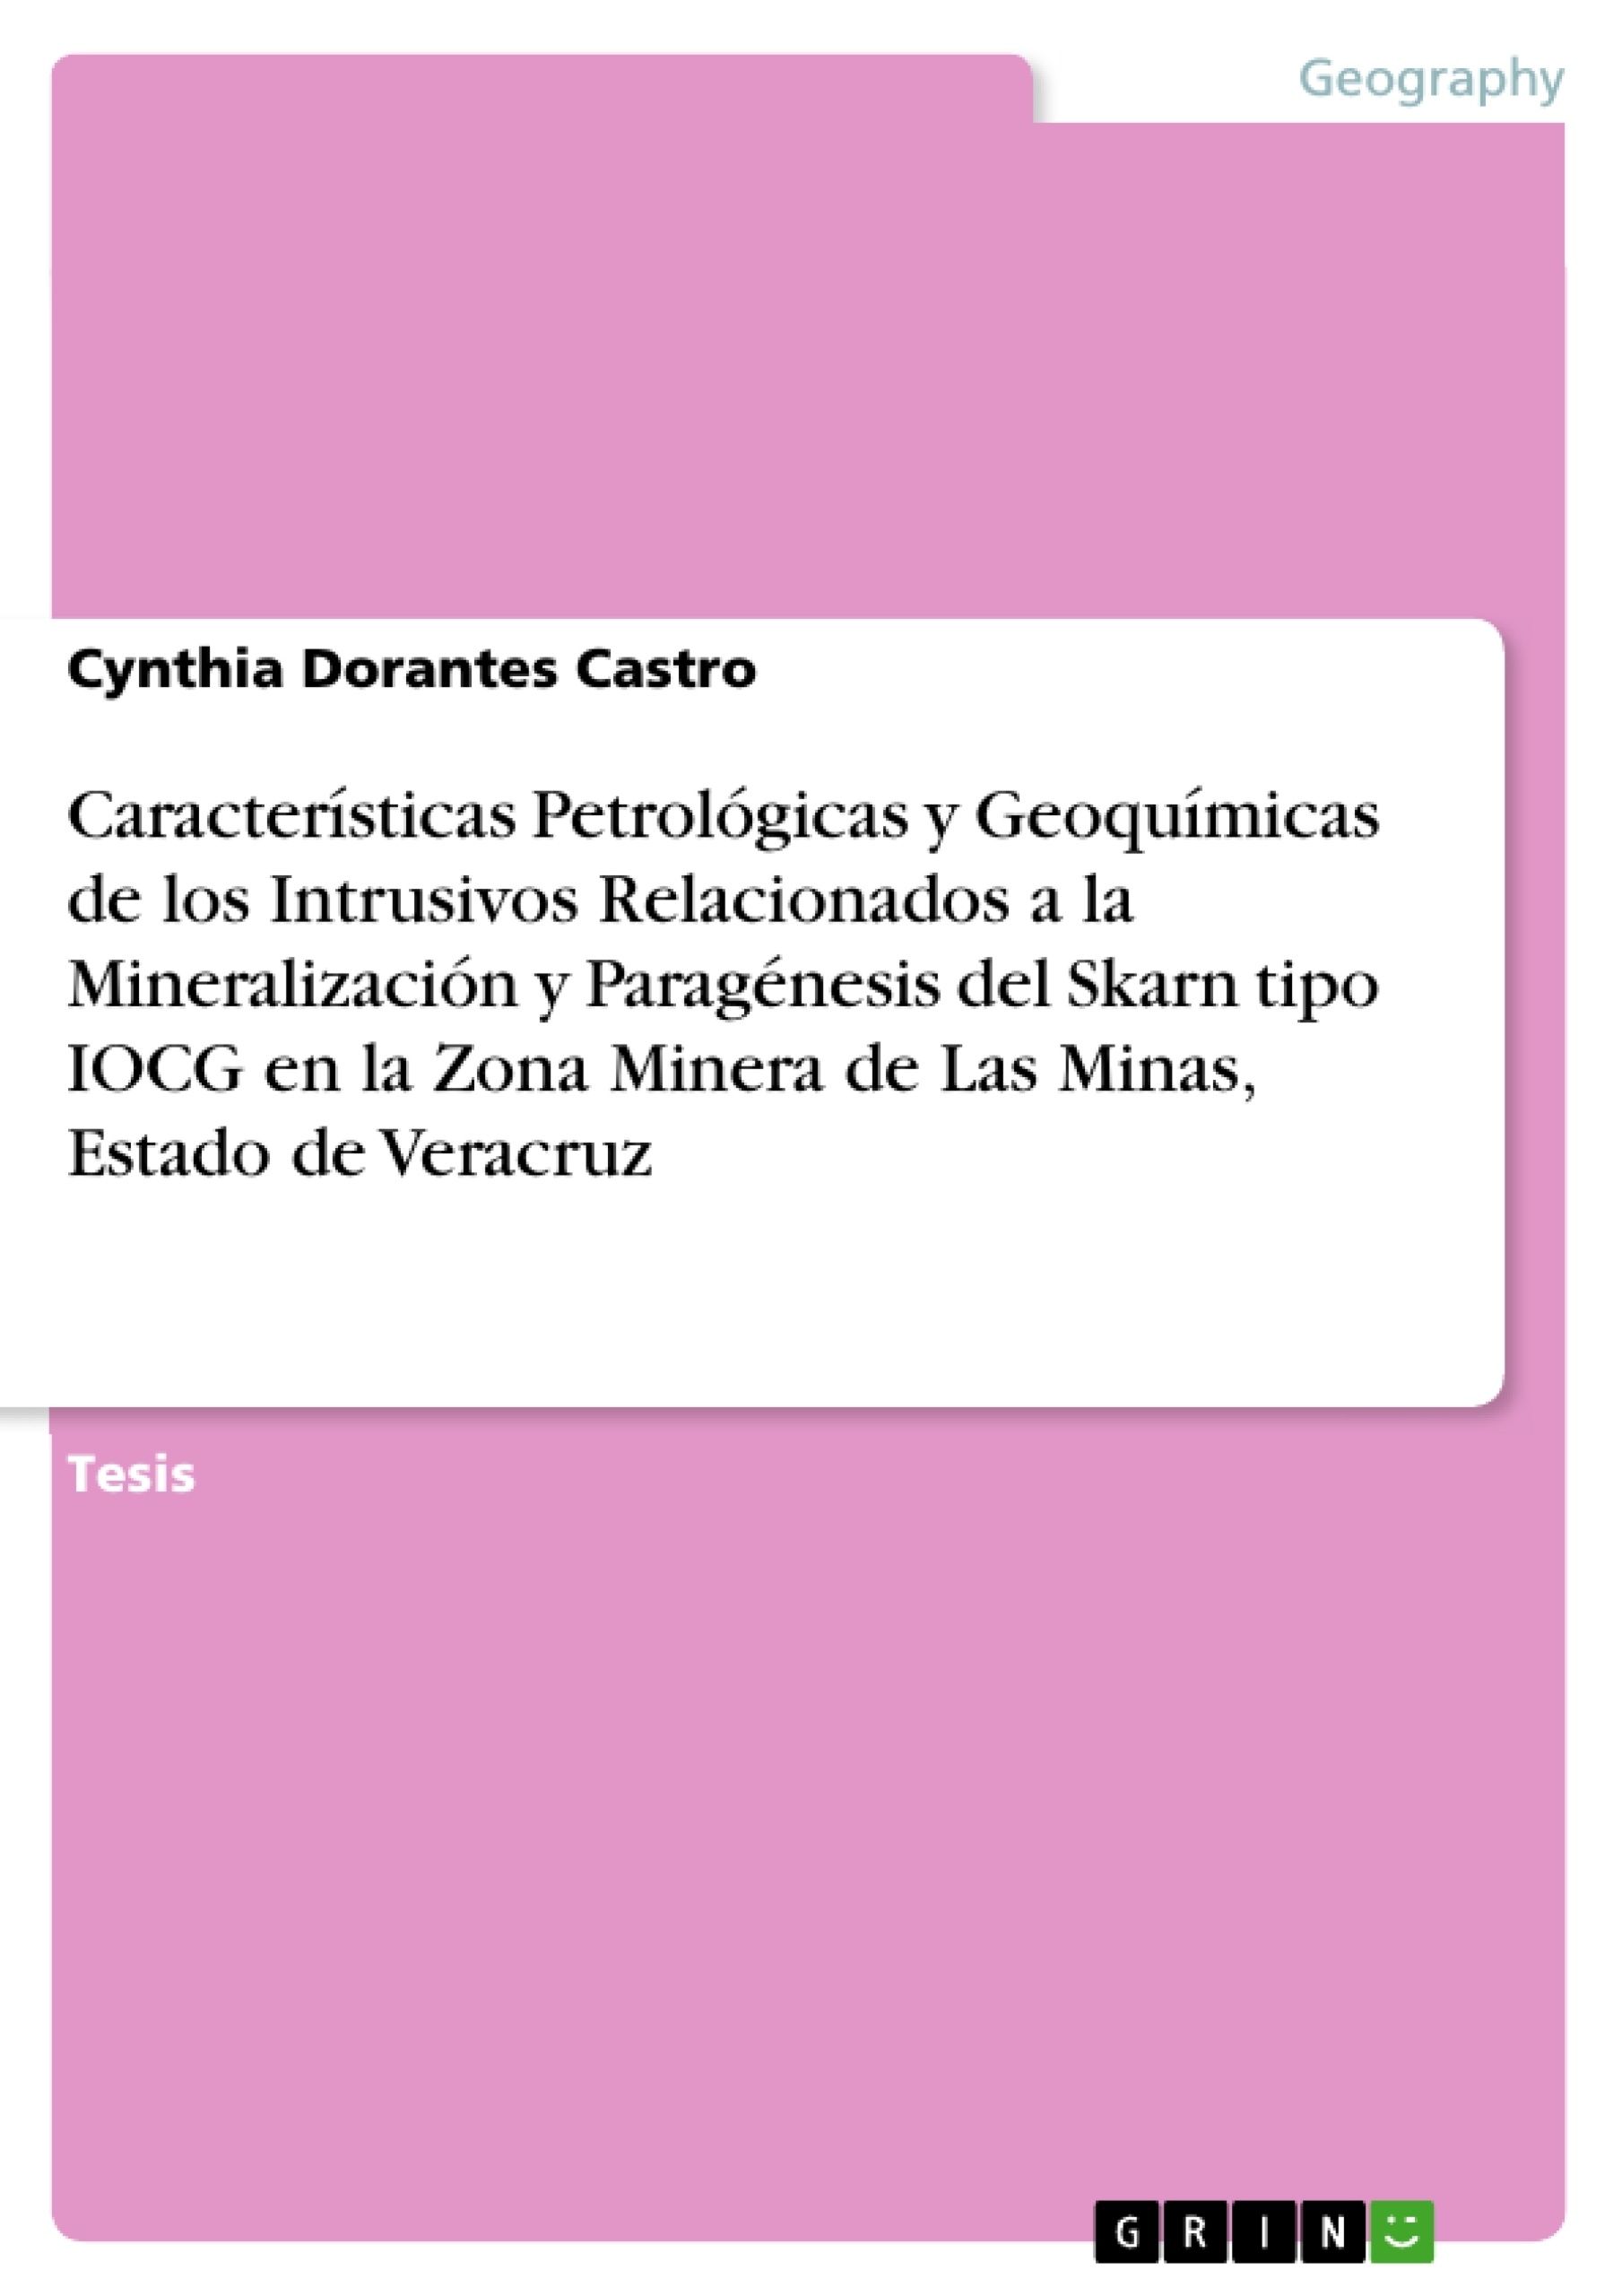 Título: Características Petrológicas y Geoquímicas de los Intrusivos Relacionados a la Mineralización y Paragénesis del Skarn tipo IOCG en la Zona Minera de Las Minas, Estado de Veracruz